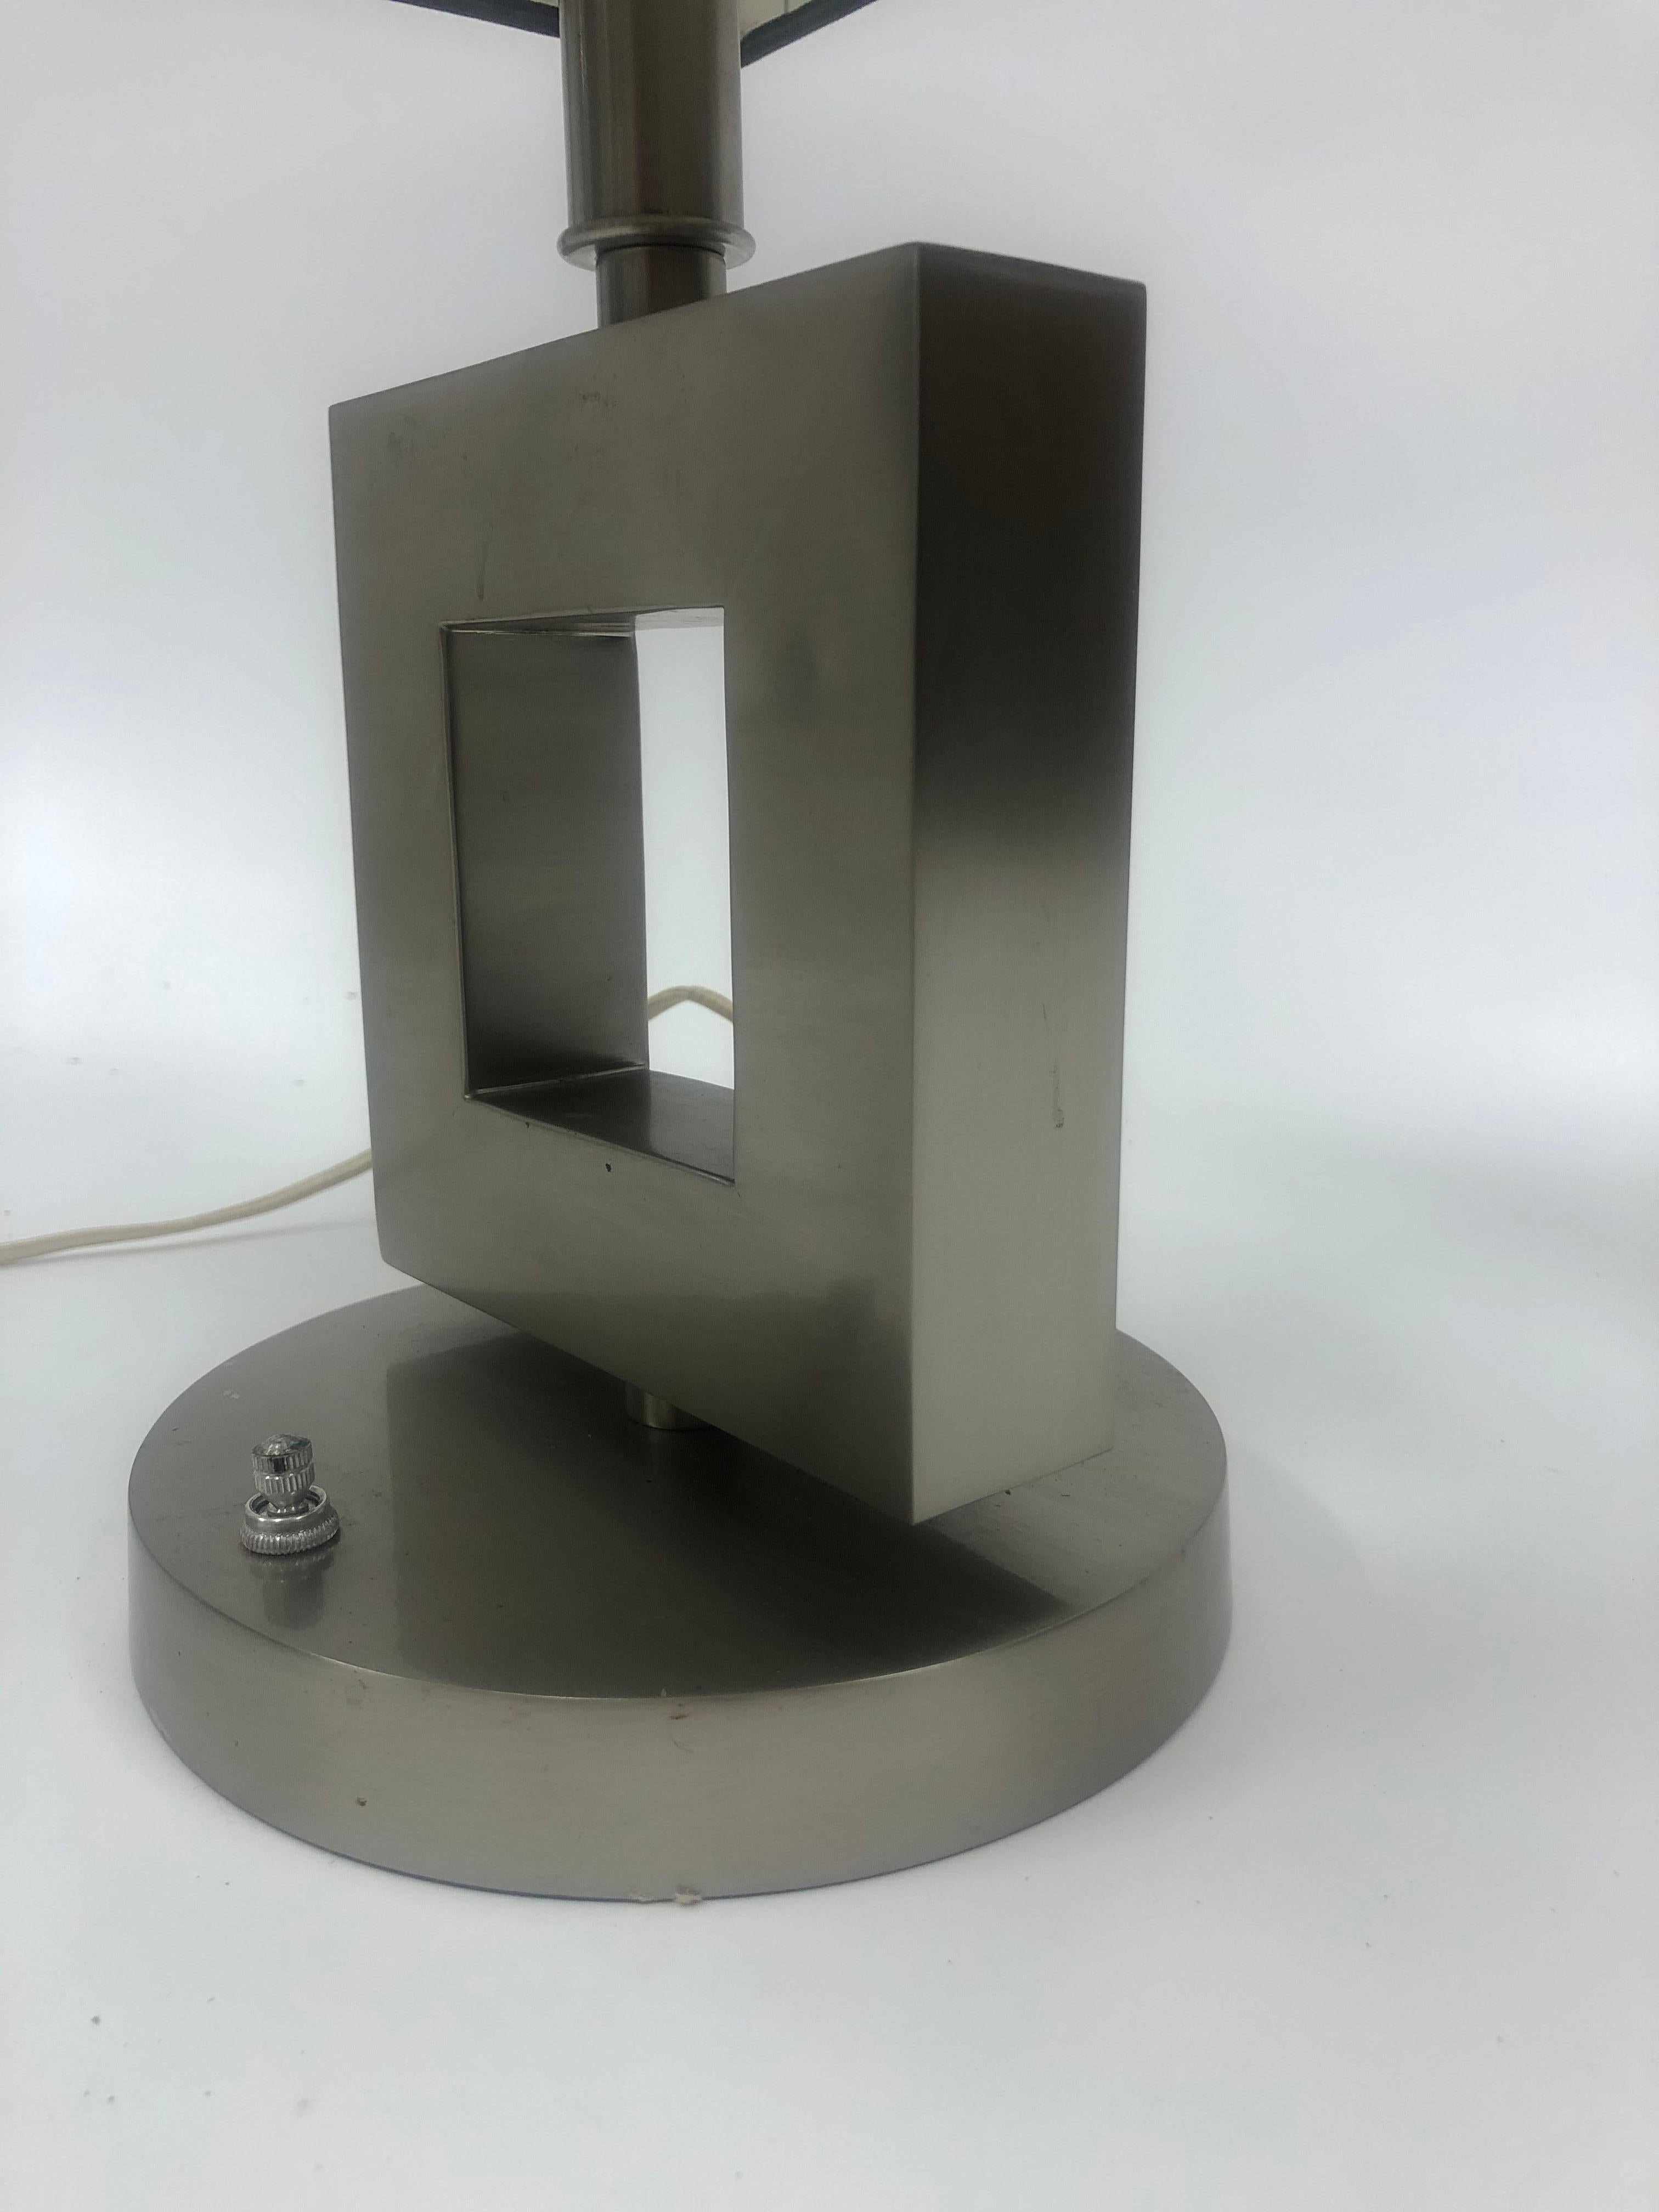 Lampe de table géométrique en acier inoxydable brossé avec abat-jour rectangulaire carré noir. Dimensions de l'abat-jour : H 9 7/8